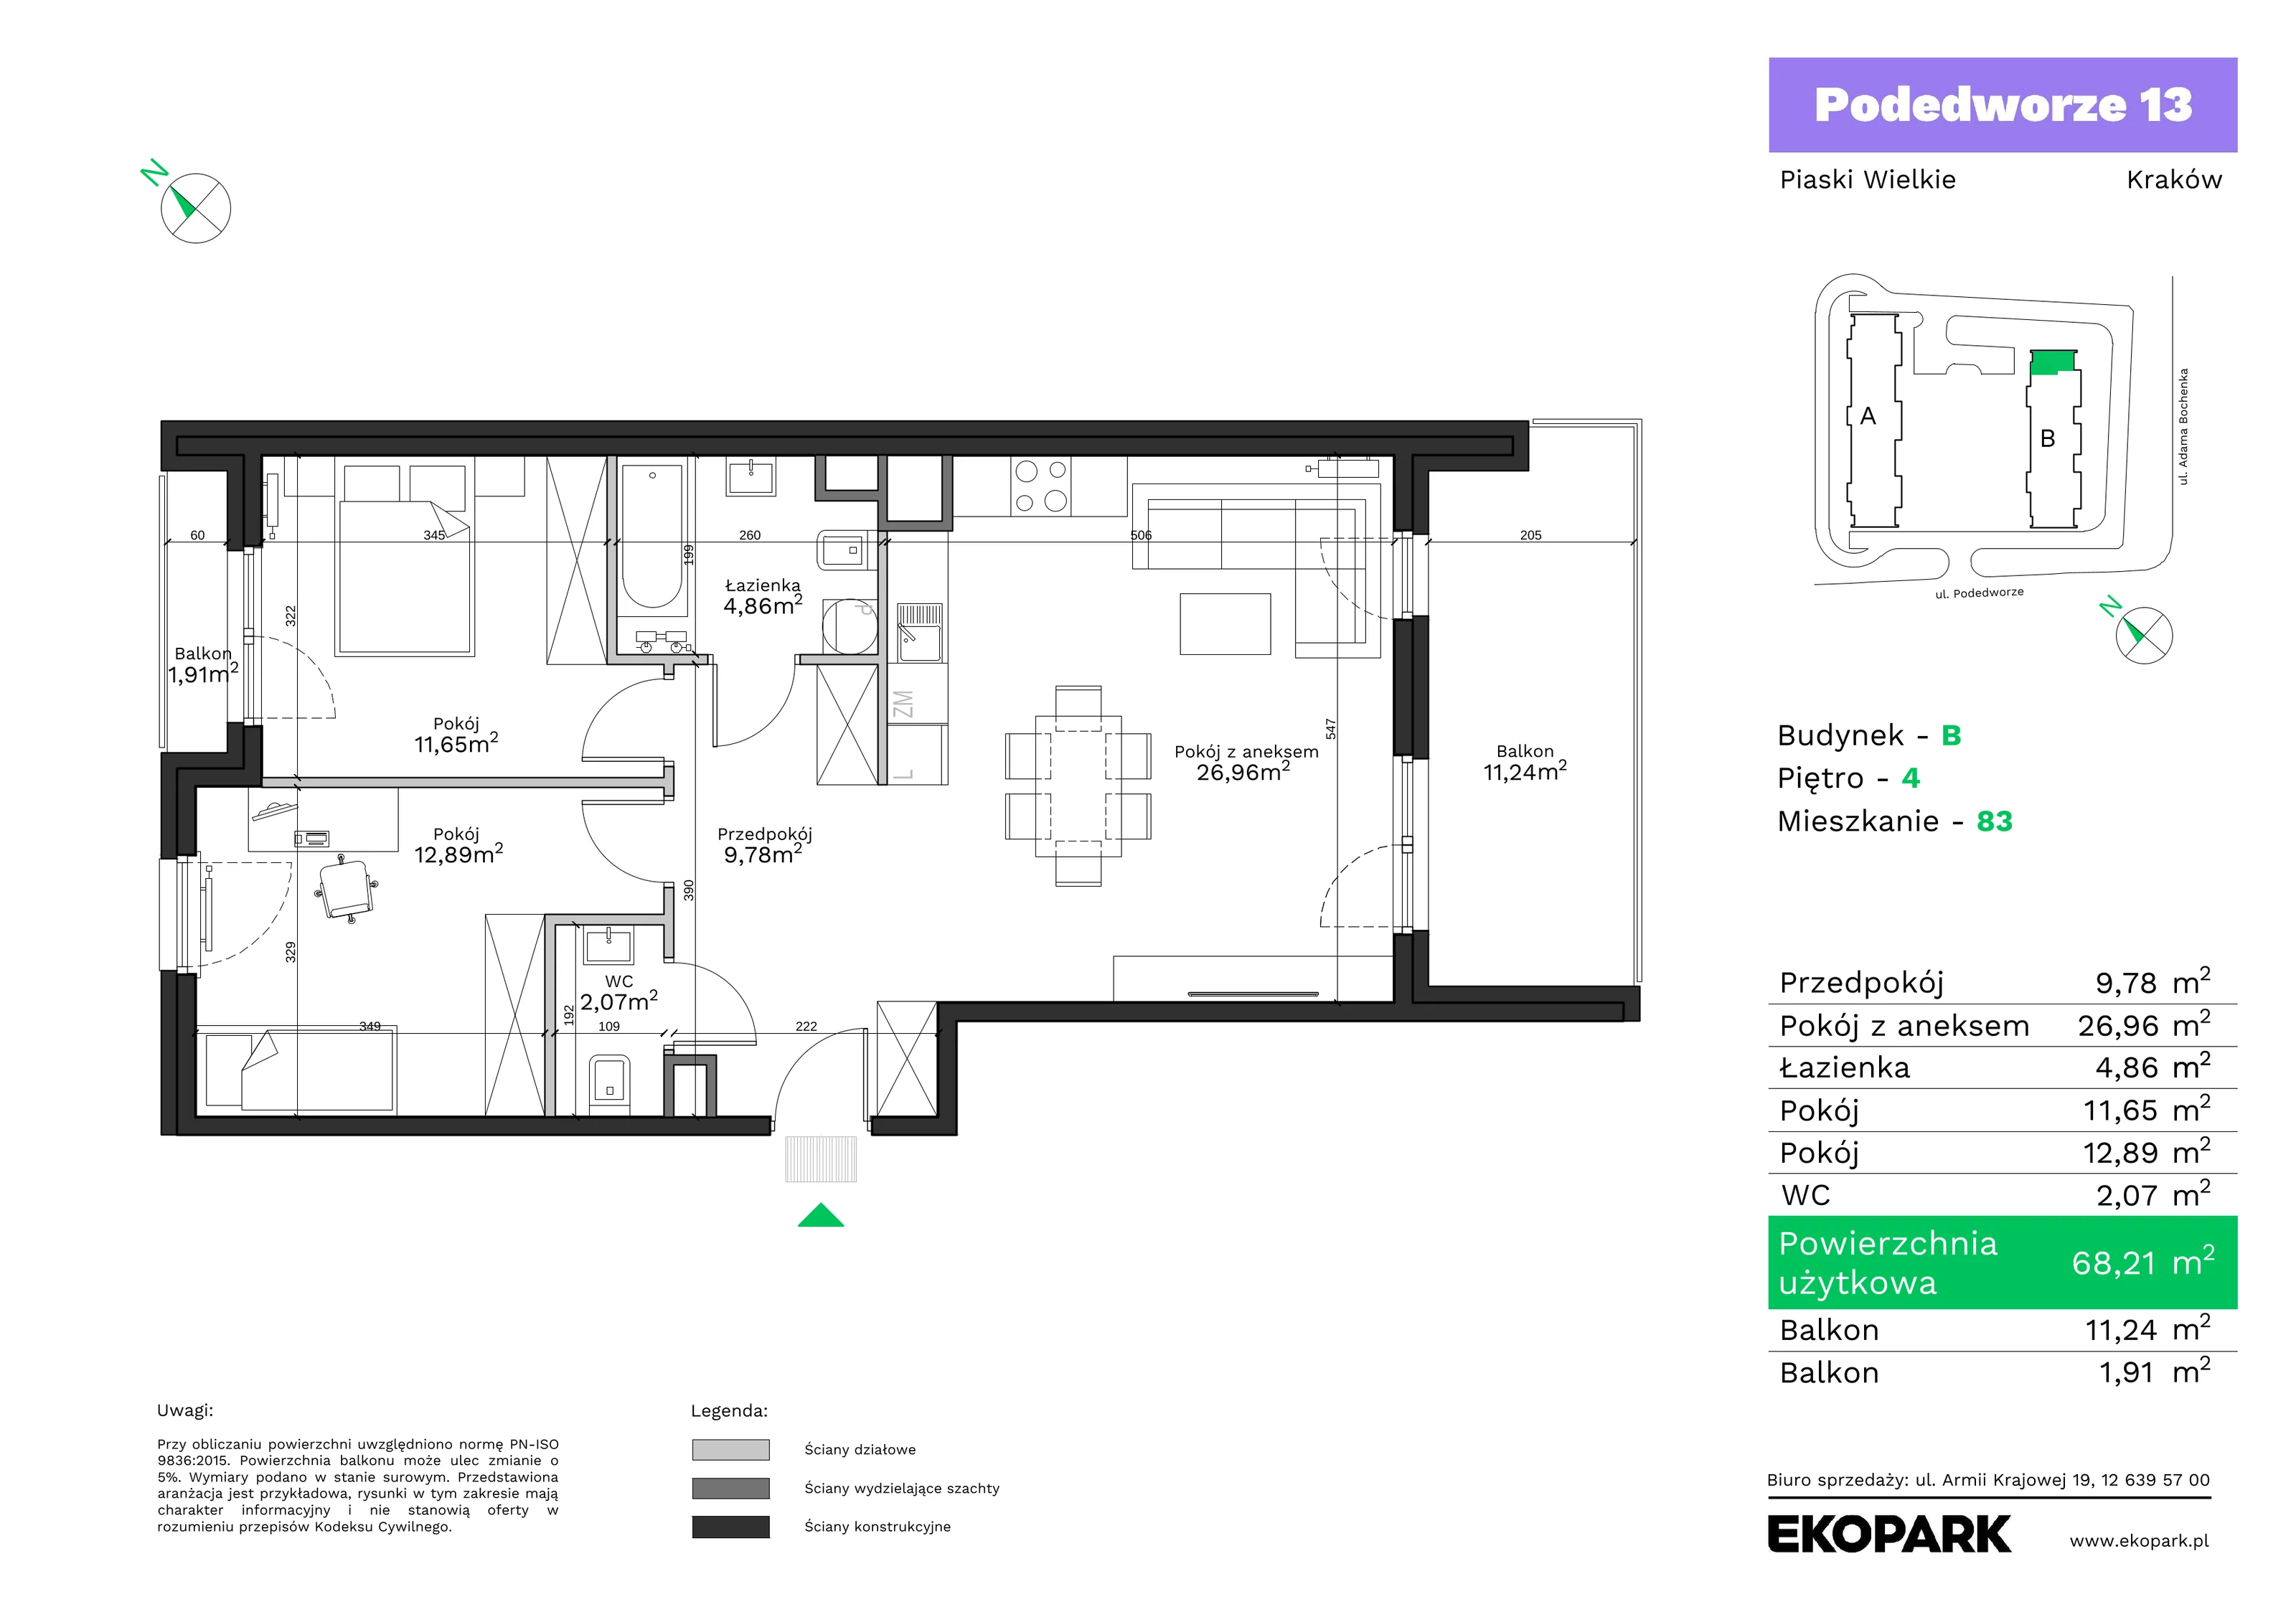 Mieszkanie 68,21 m², piętro 4, oferta nr B83, Podedworze 13, Kraków, Podgórze Duchackie, Piaski Wielkie, ul. Podedworze 13